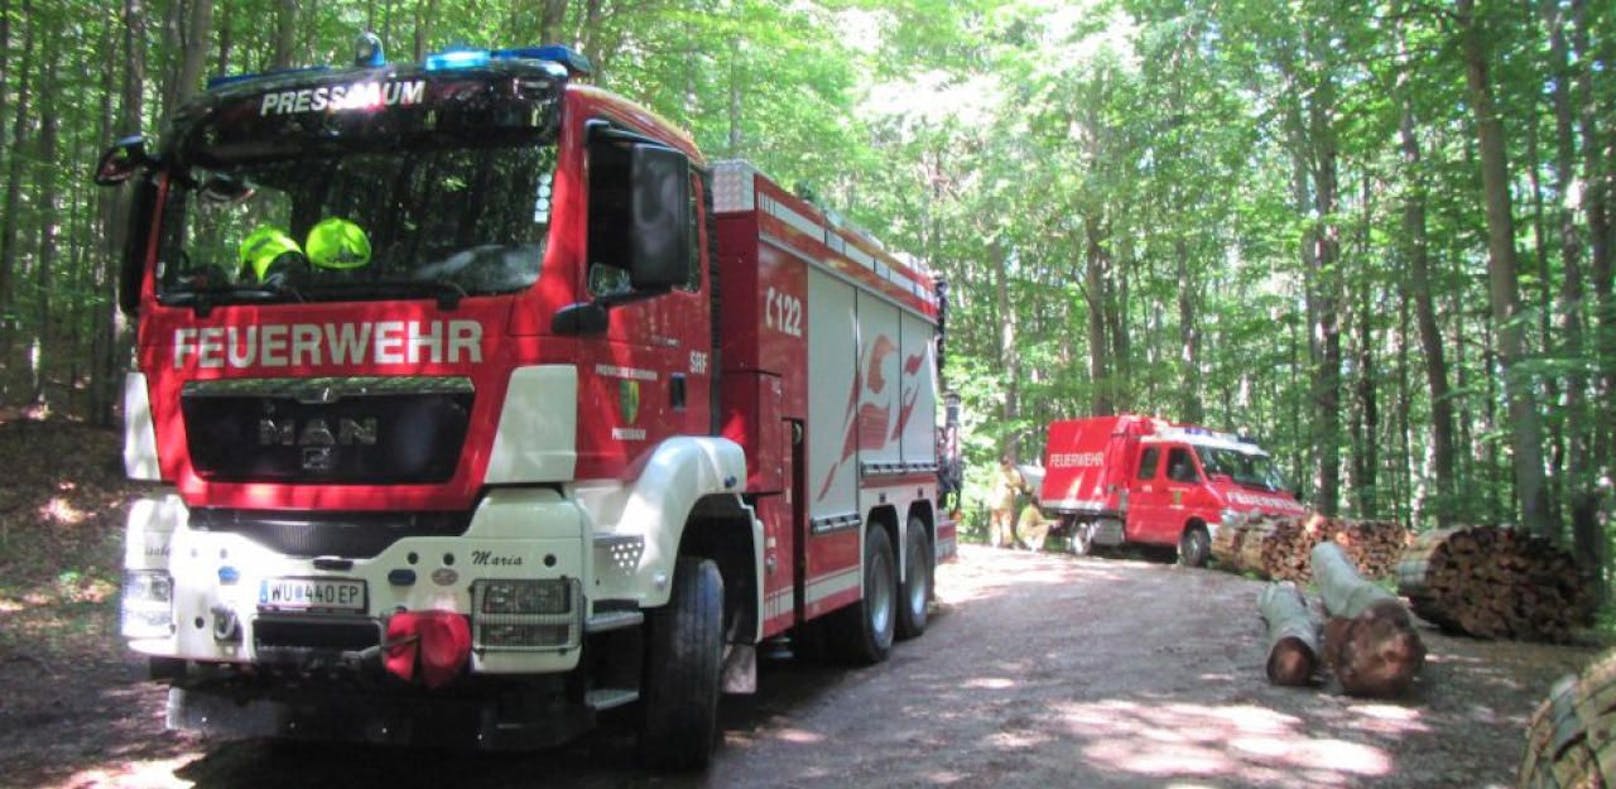 Die Feuerwehr, die Rettung und die Polizei machten sich auf den Weg in den Wald, um den verletzten Mountainbiker zu retten.